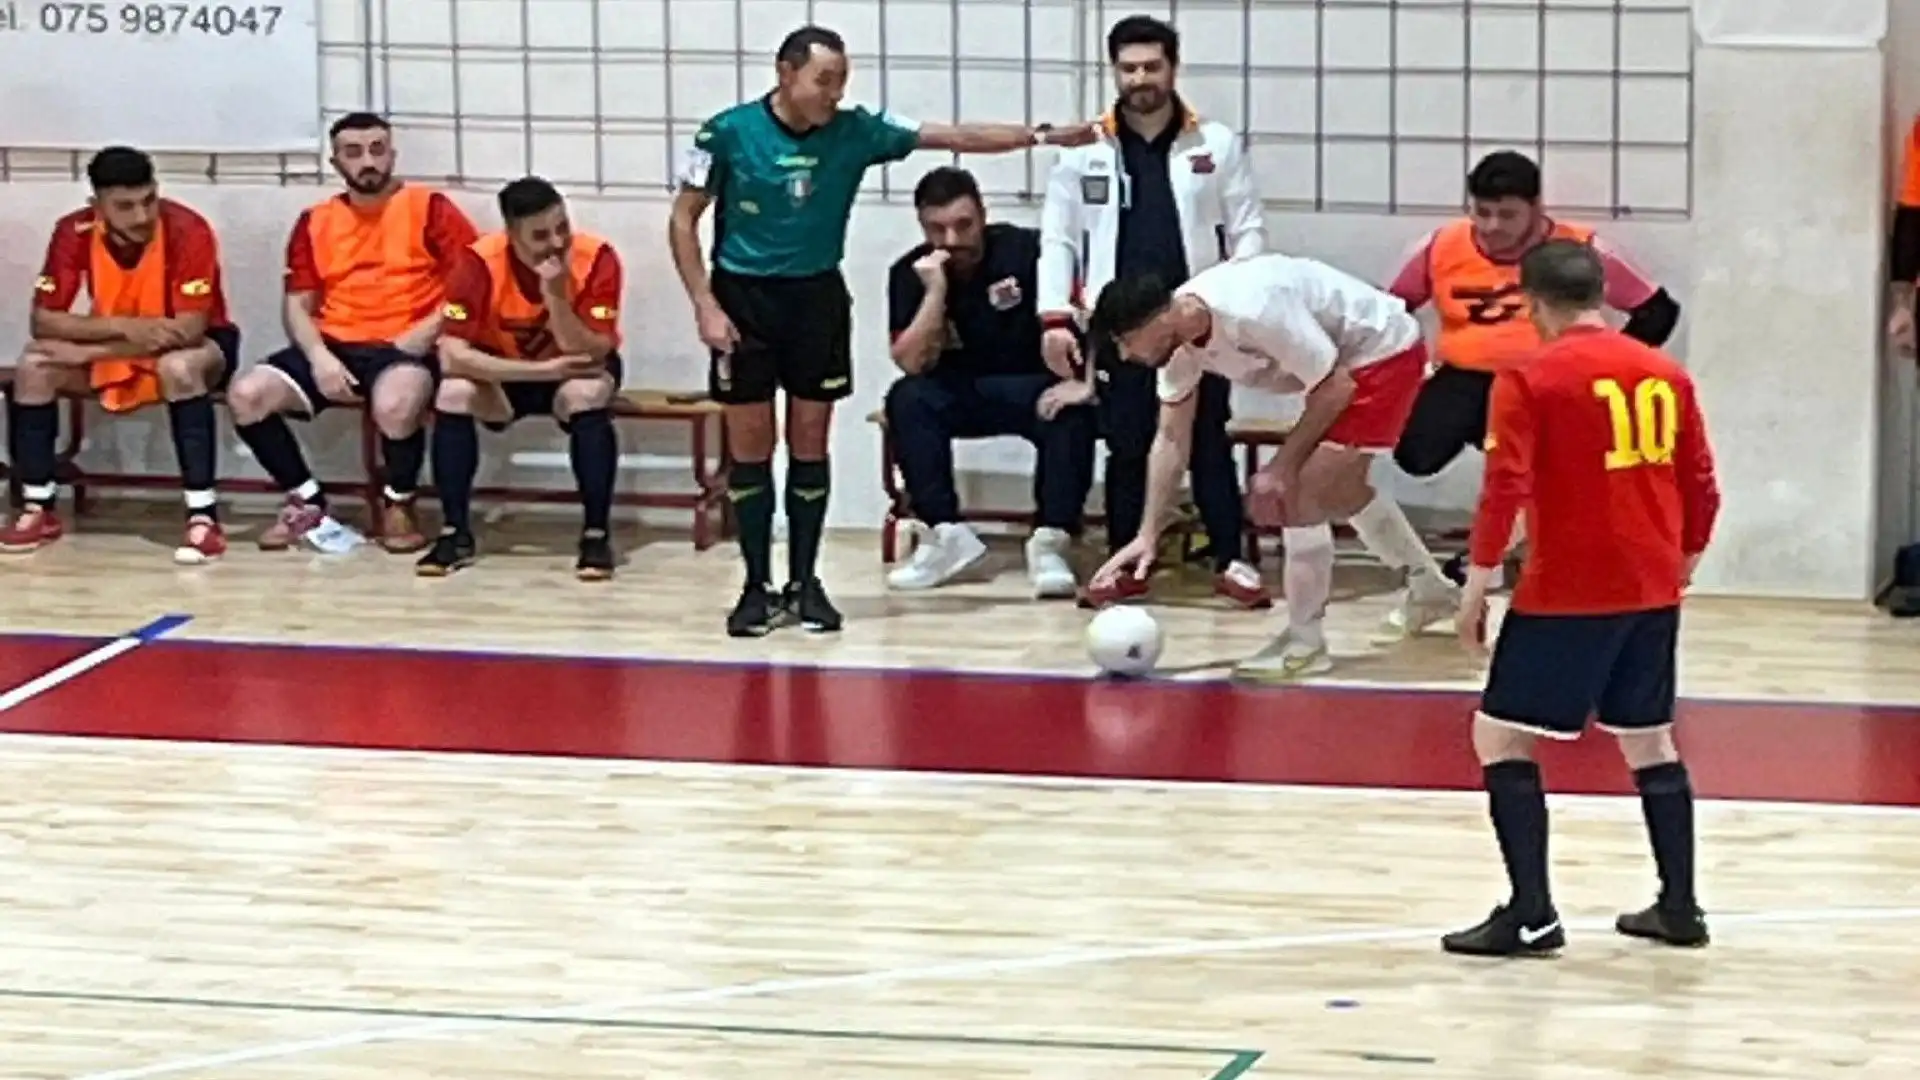 La rimessa laterale: nel futsal si effettua con i piedi e palla a terra. Nel calcio giovanile questa tecnica viene utilizzata per far sperimentare le tipologie di rimesse laterali